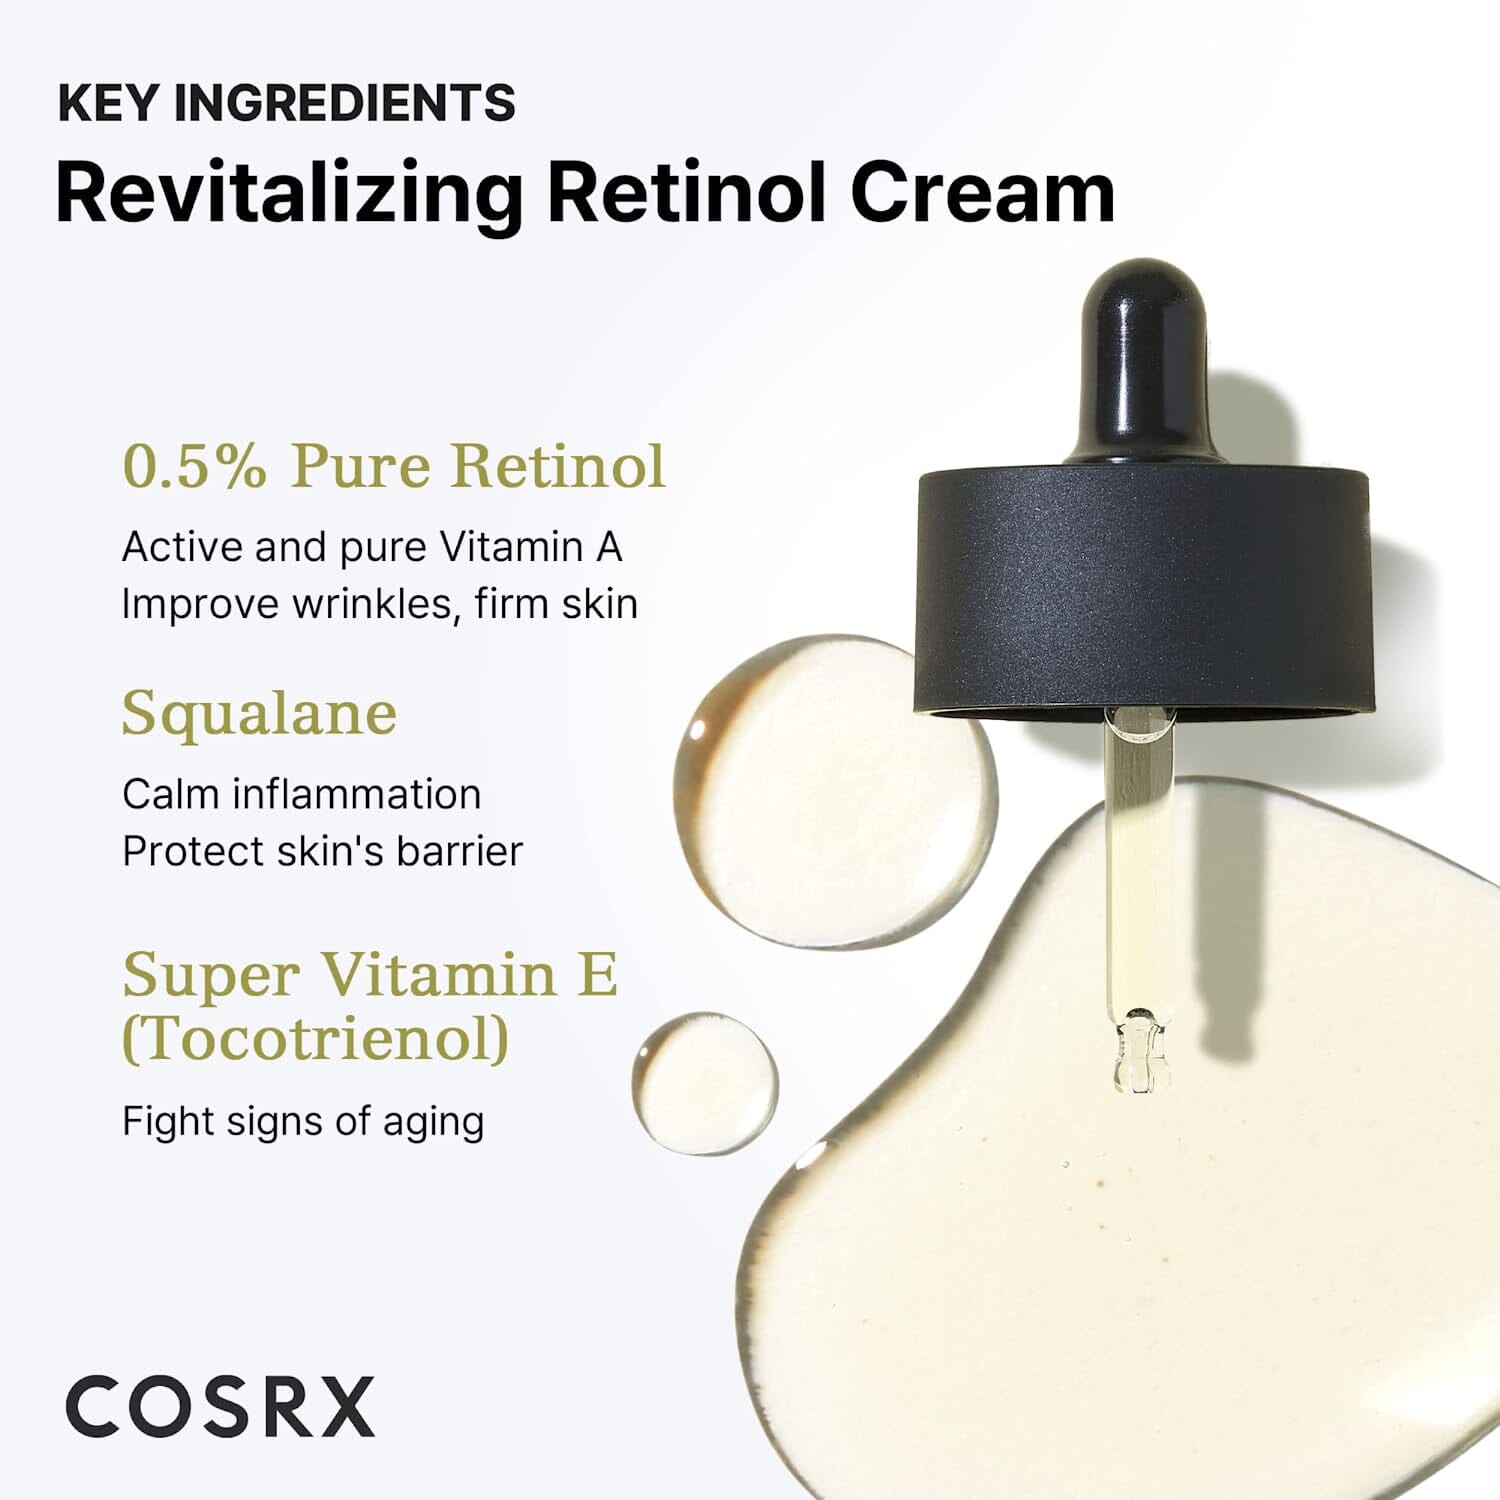 COSRX The Retinol 0.5 Oil Skin Care COSRX ORION XO Sri Lanka